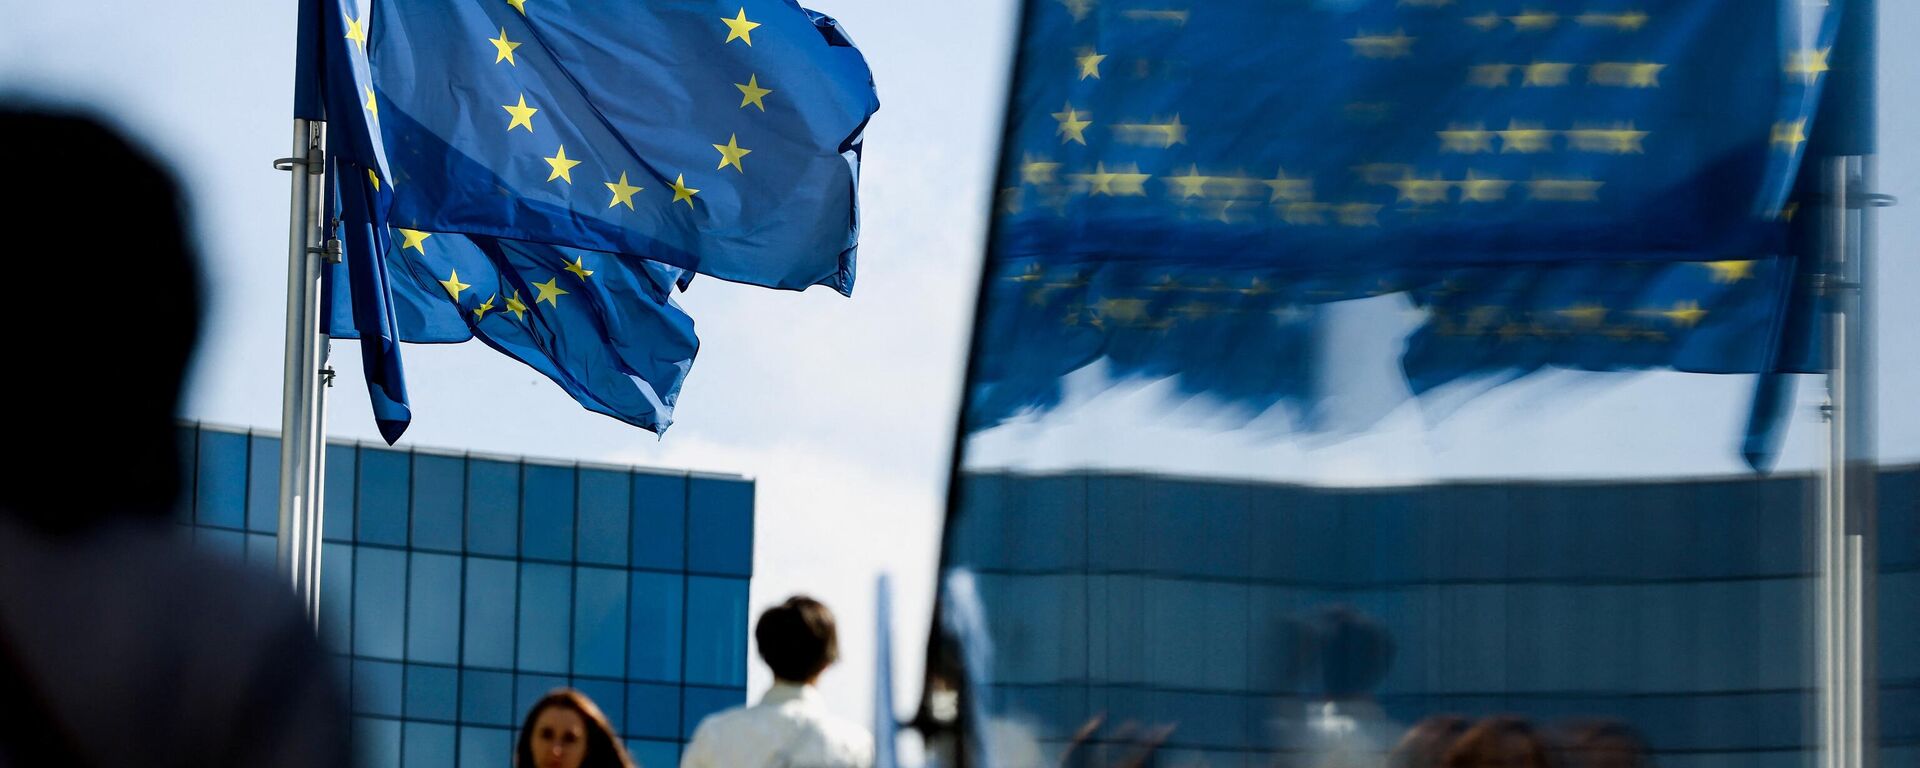 Люди идут перед флагом Евросоюза в районе штаб-квартиры ЕС в Брюсселе 23 сентября 2021 г. - Sputnik Абхазия, 1920, 04.03.2022